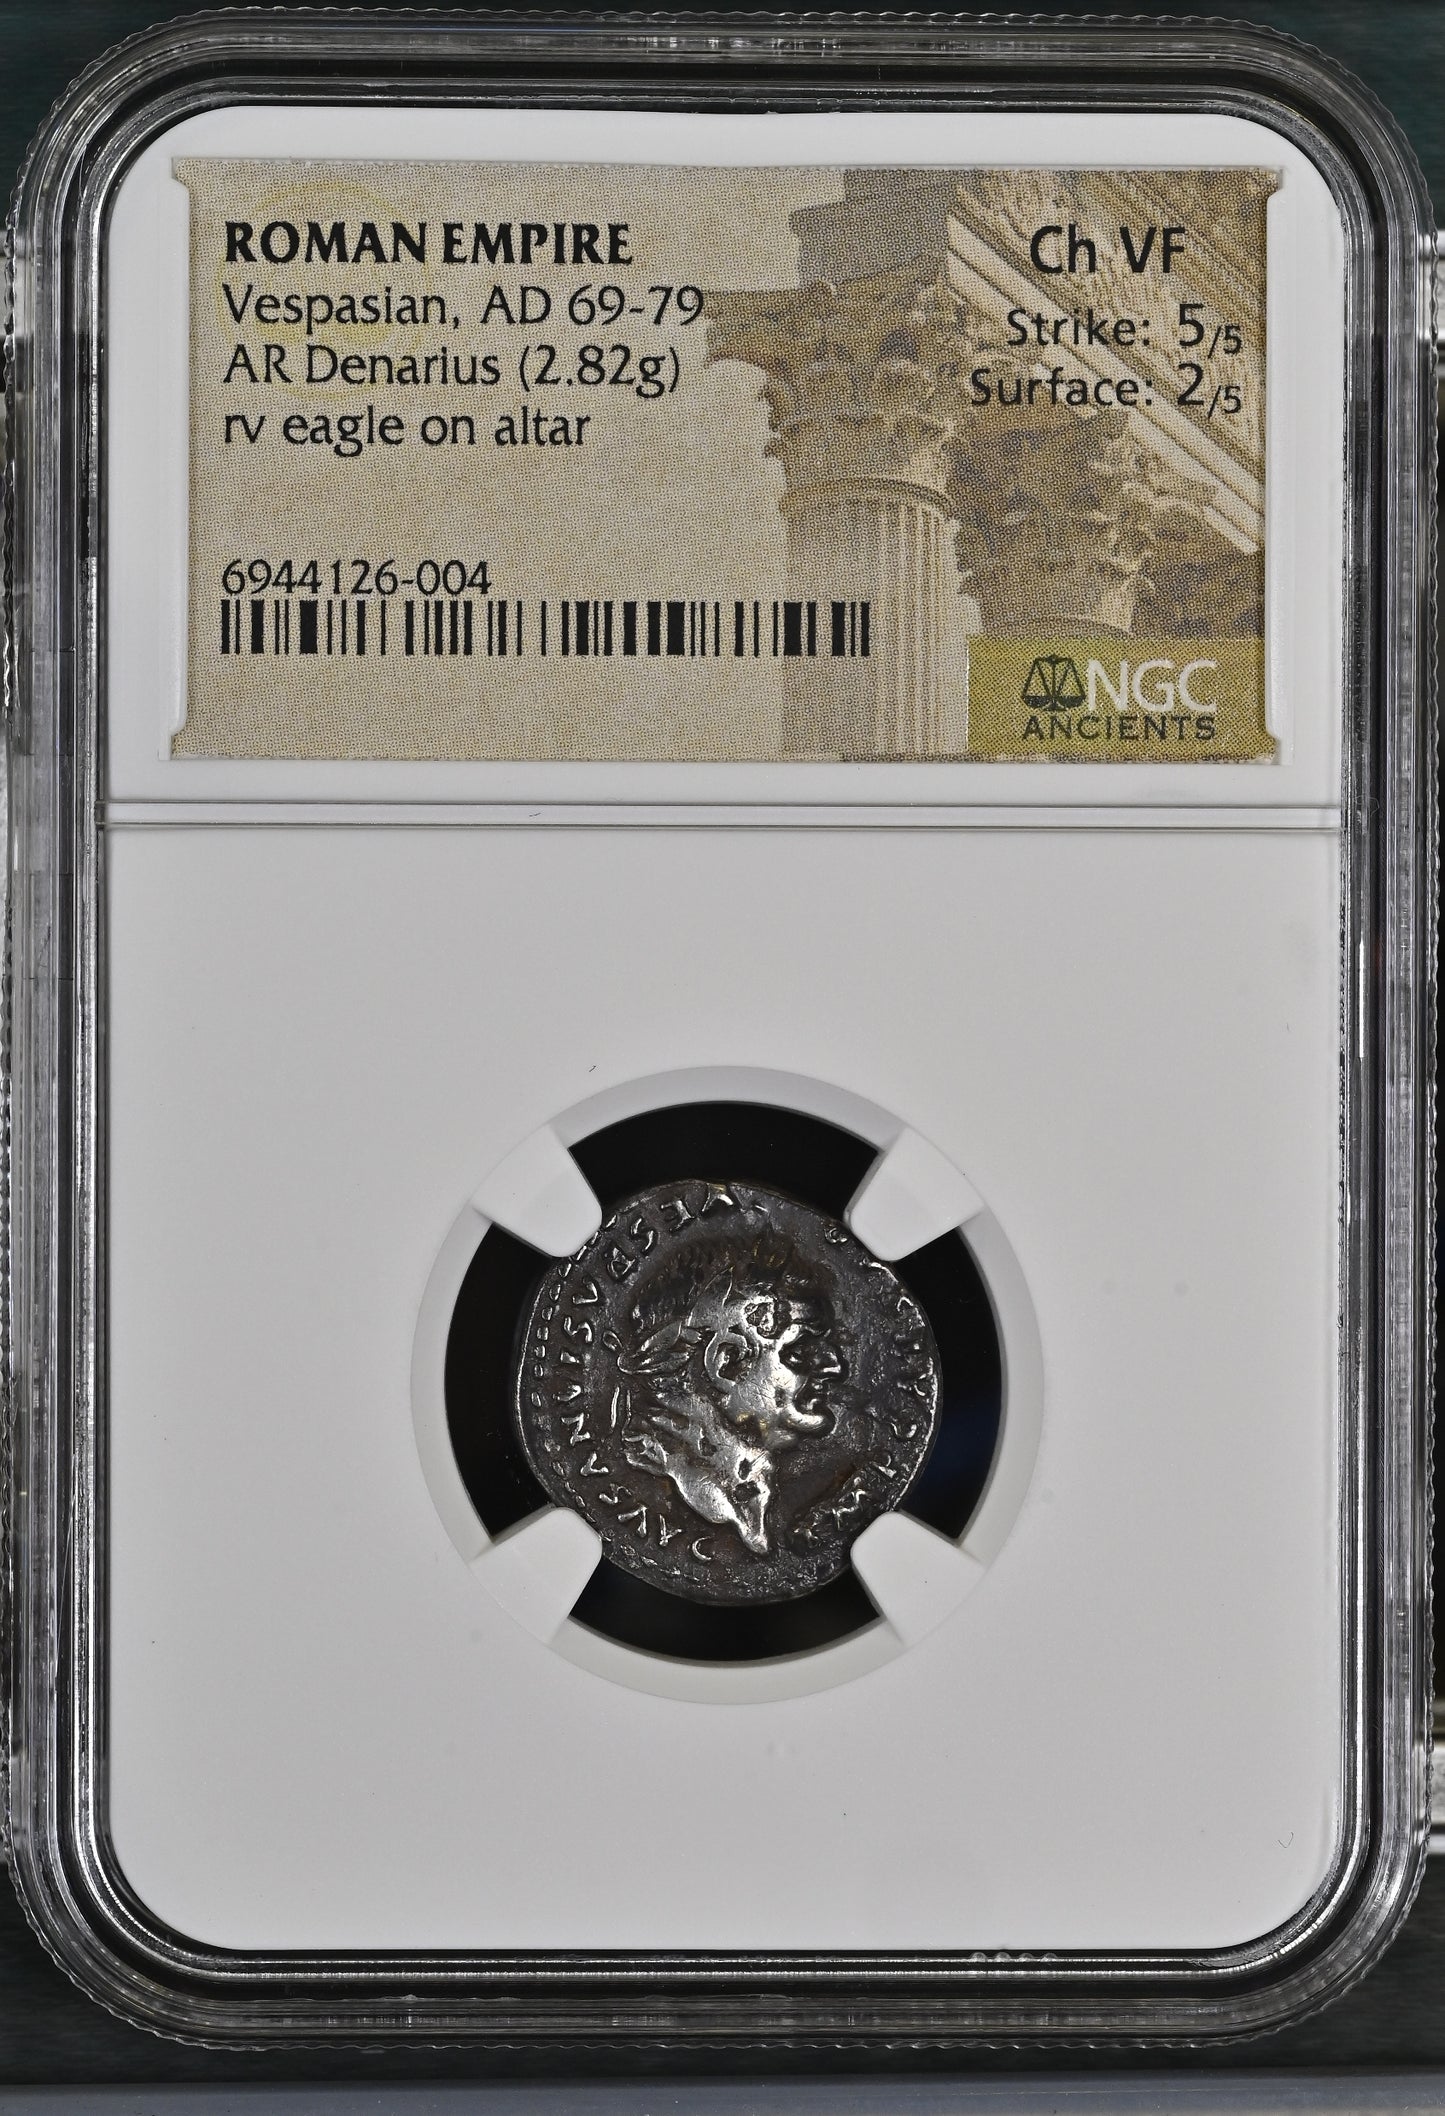 Roman Empire - Vespasian - Silver Denarius - NGC Ch VF - RIC:845